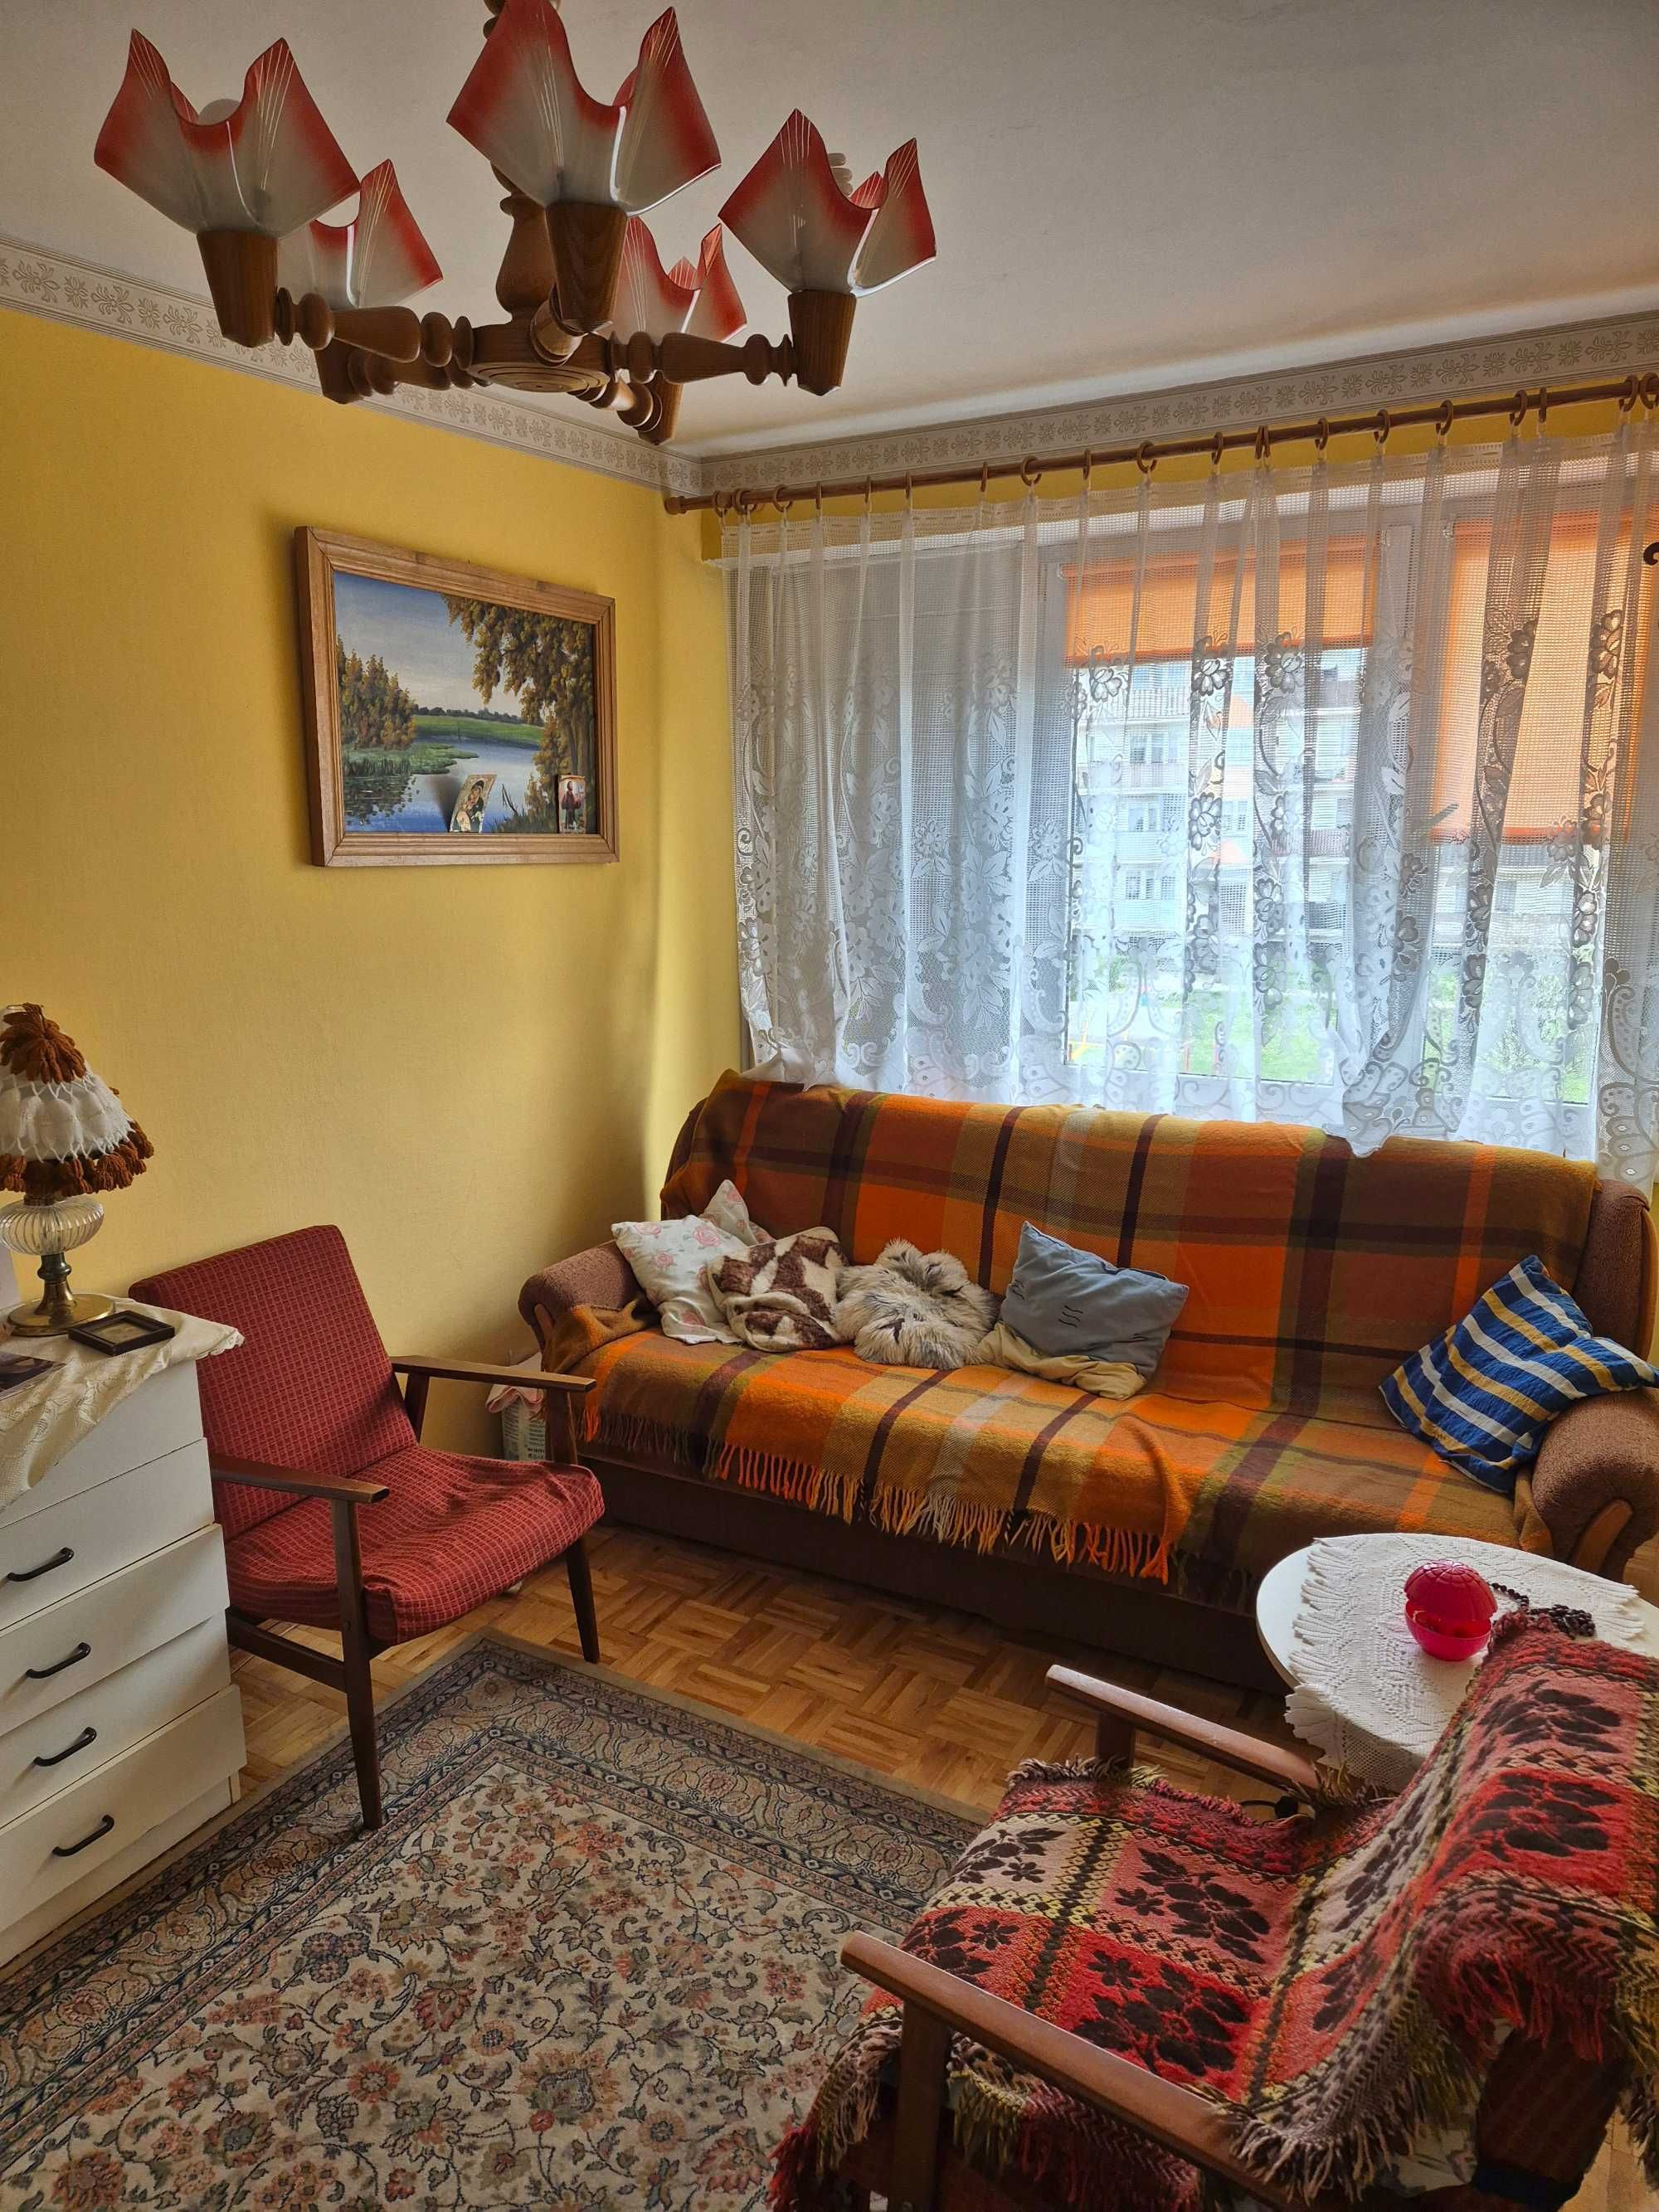 Sprzedam mieszkanie 48 m2, 2 pokoje, ul. Sikorskiego 27 w Bartoszycach